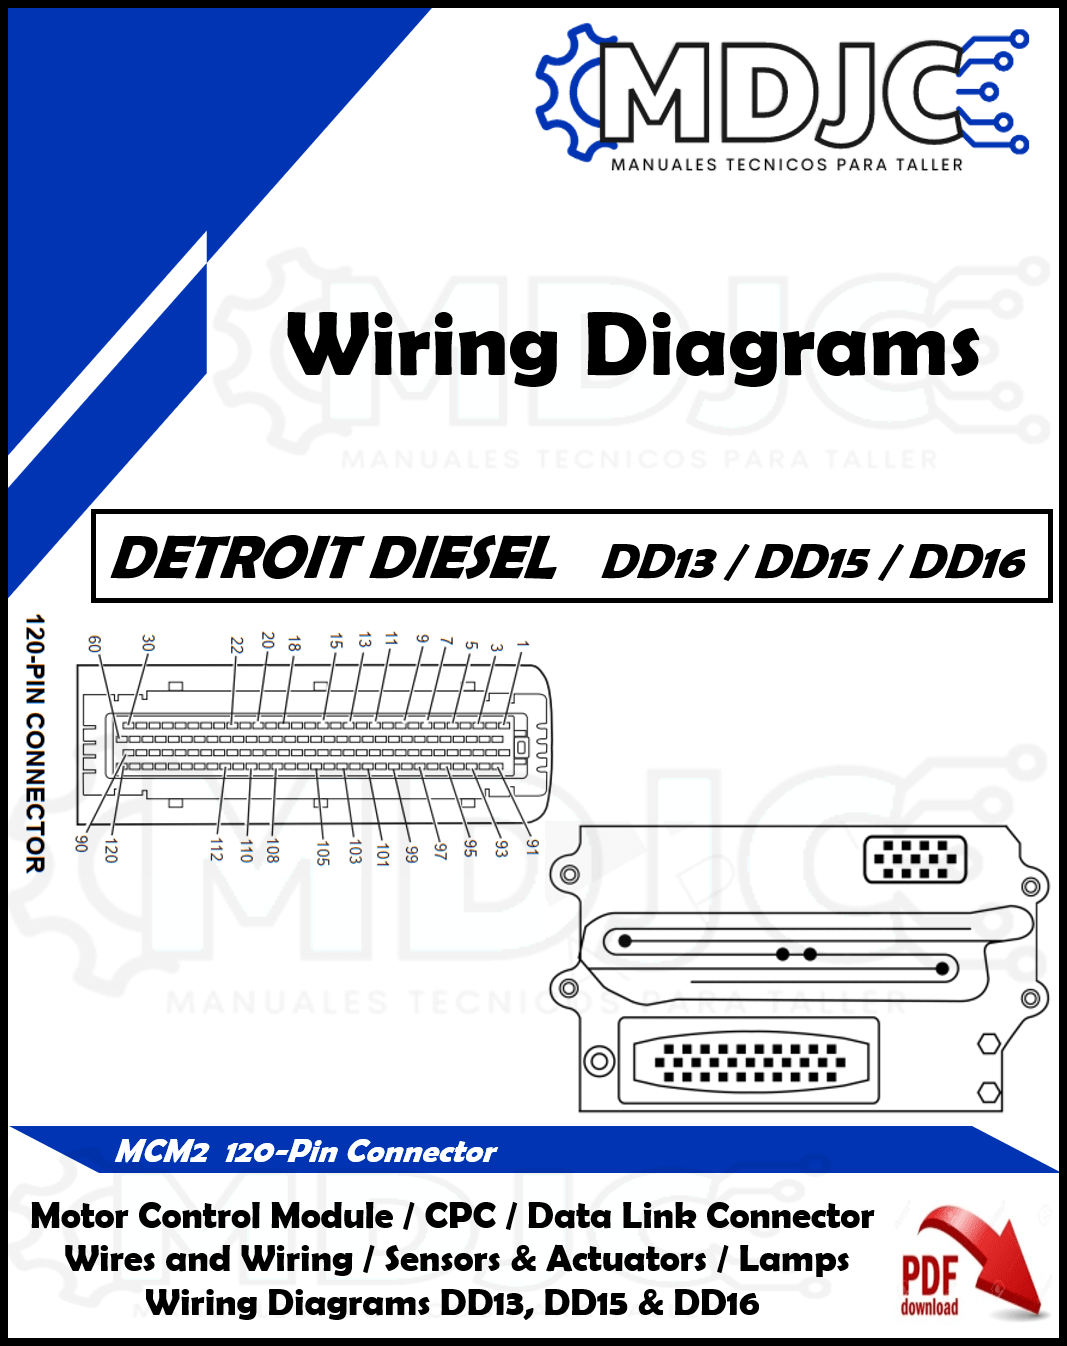 Manual Diagramas Sistema Eléctrico Motor Detroit Diesel DD13 / DD15 / DD16